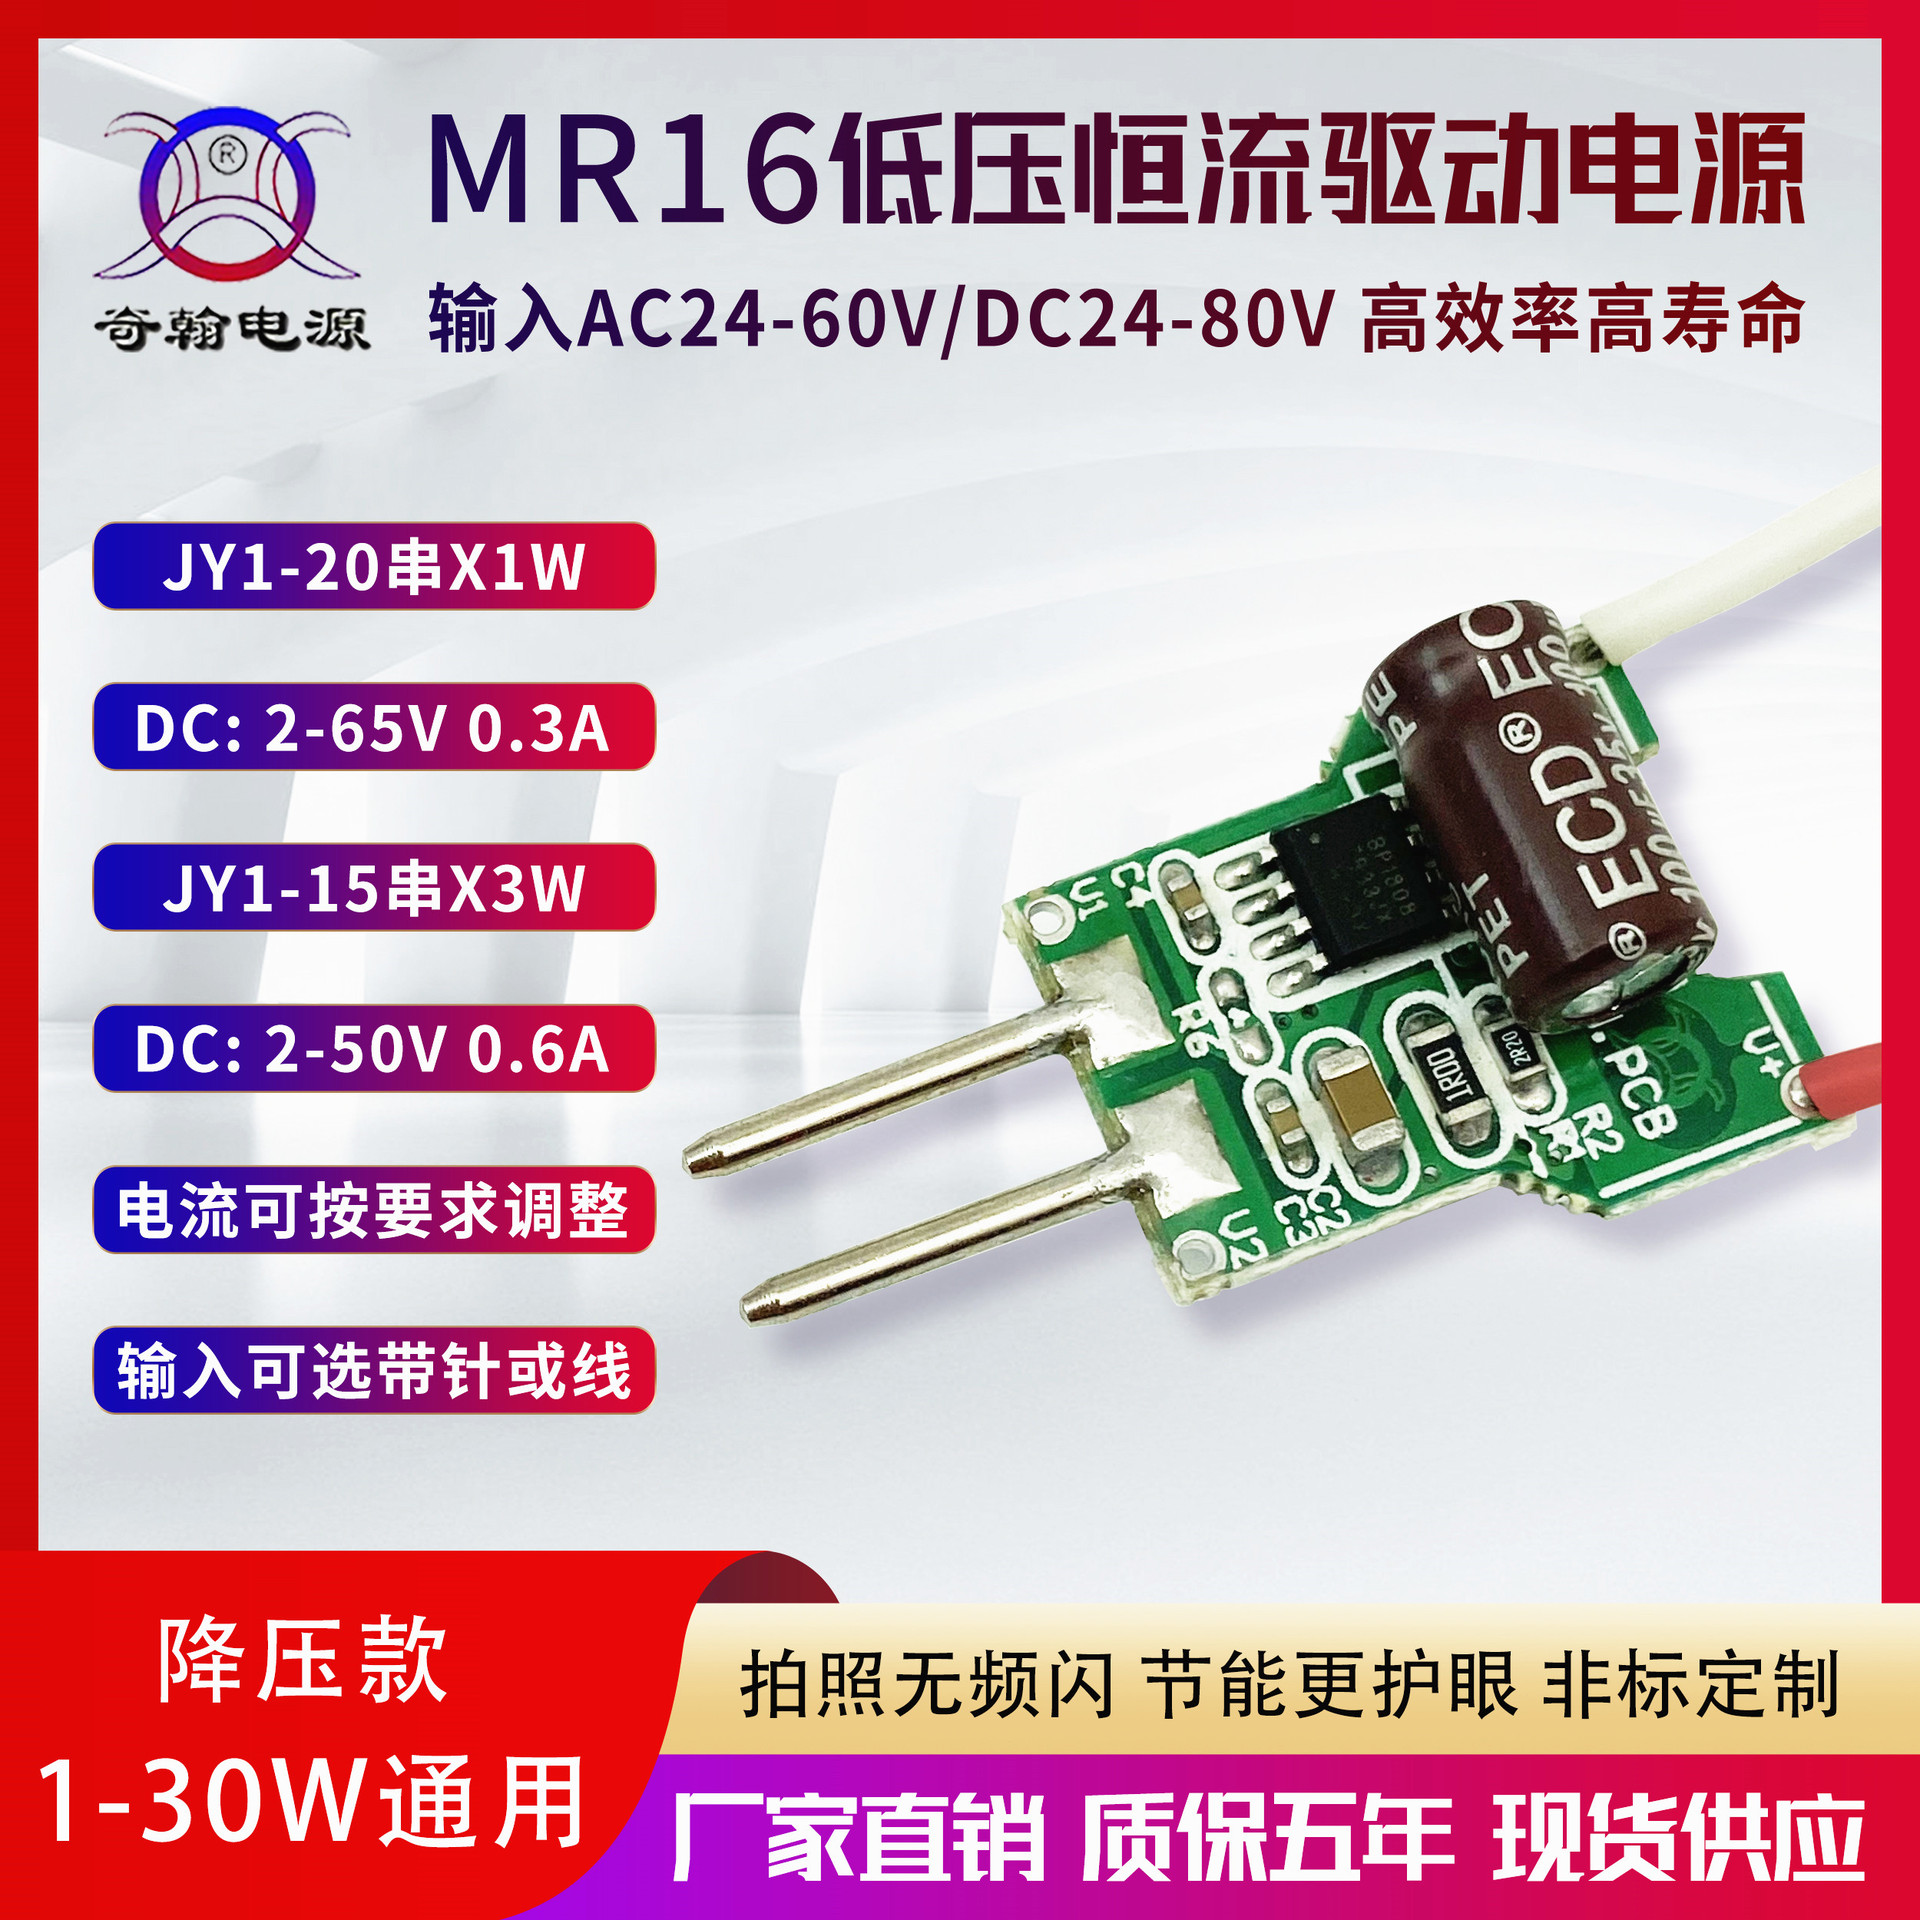 MR16低压电源降压ACDC24V36V48V60V1-30W射灯筒灯帕灯LED驱动电源